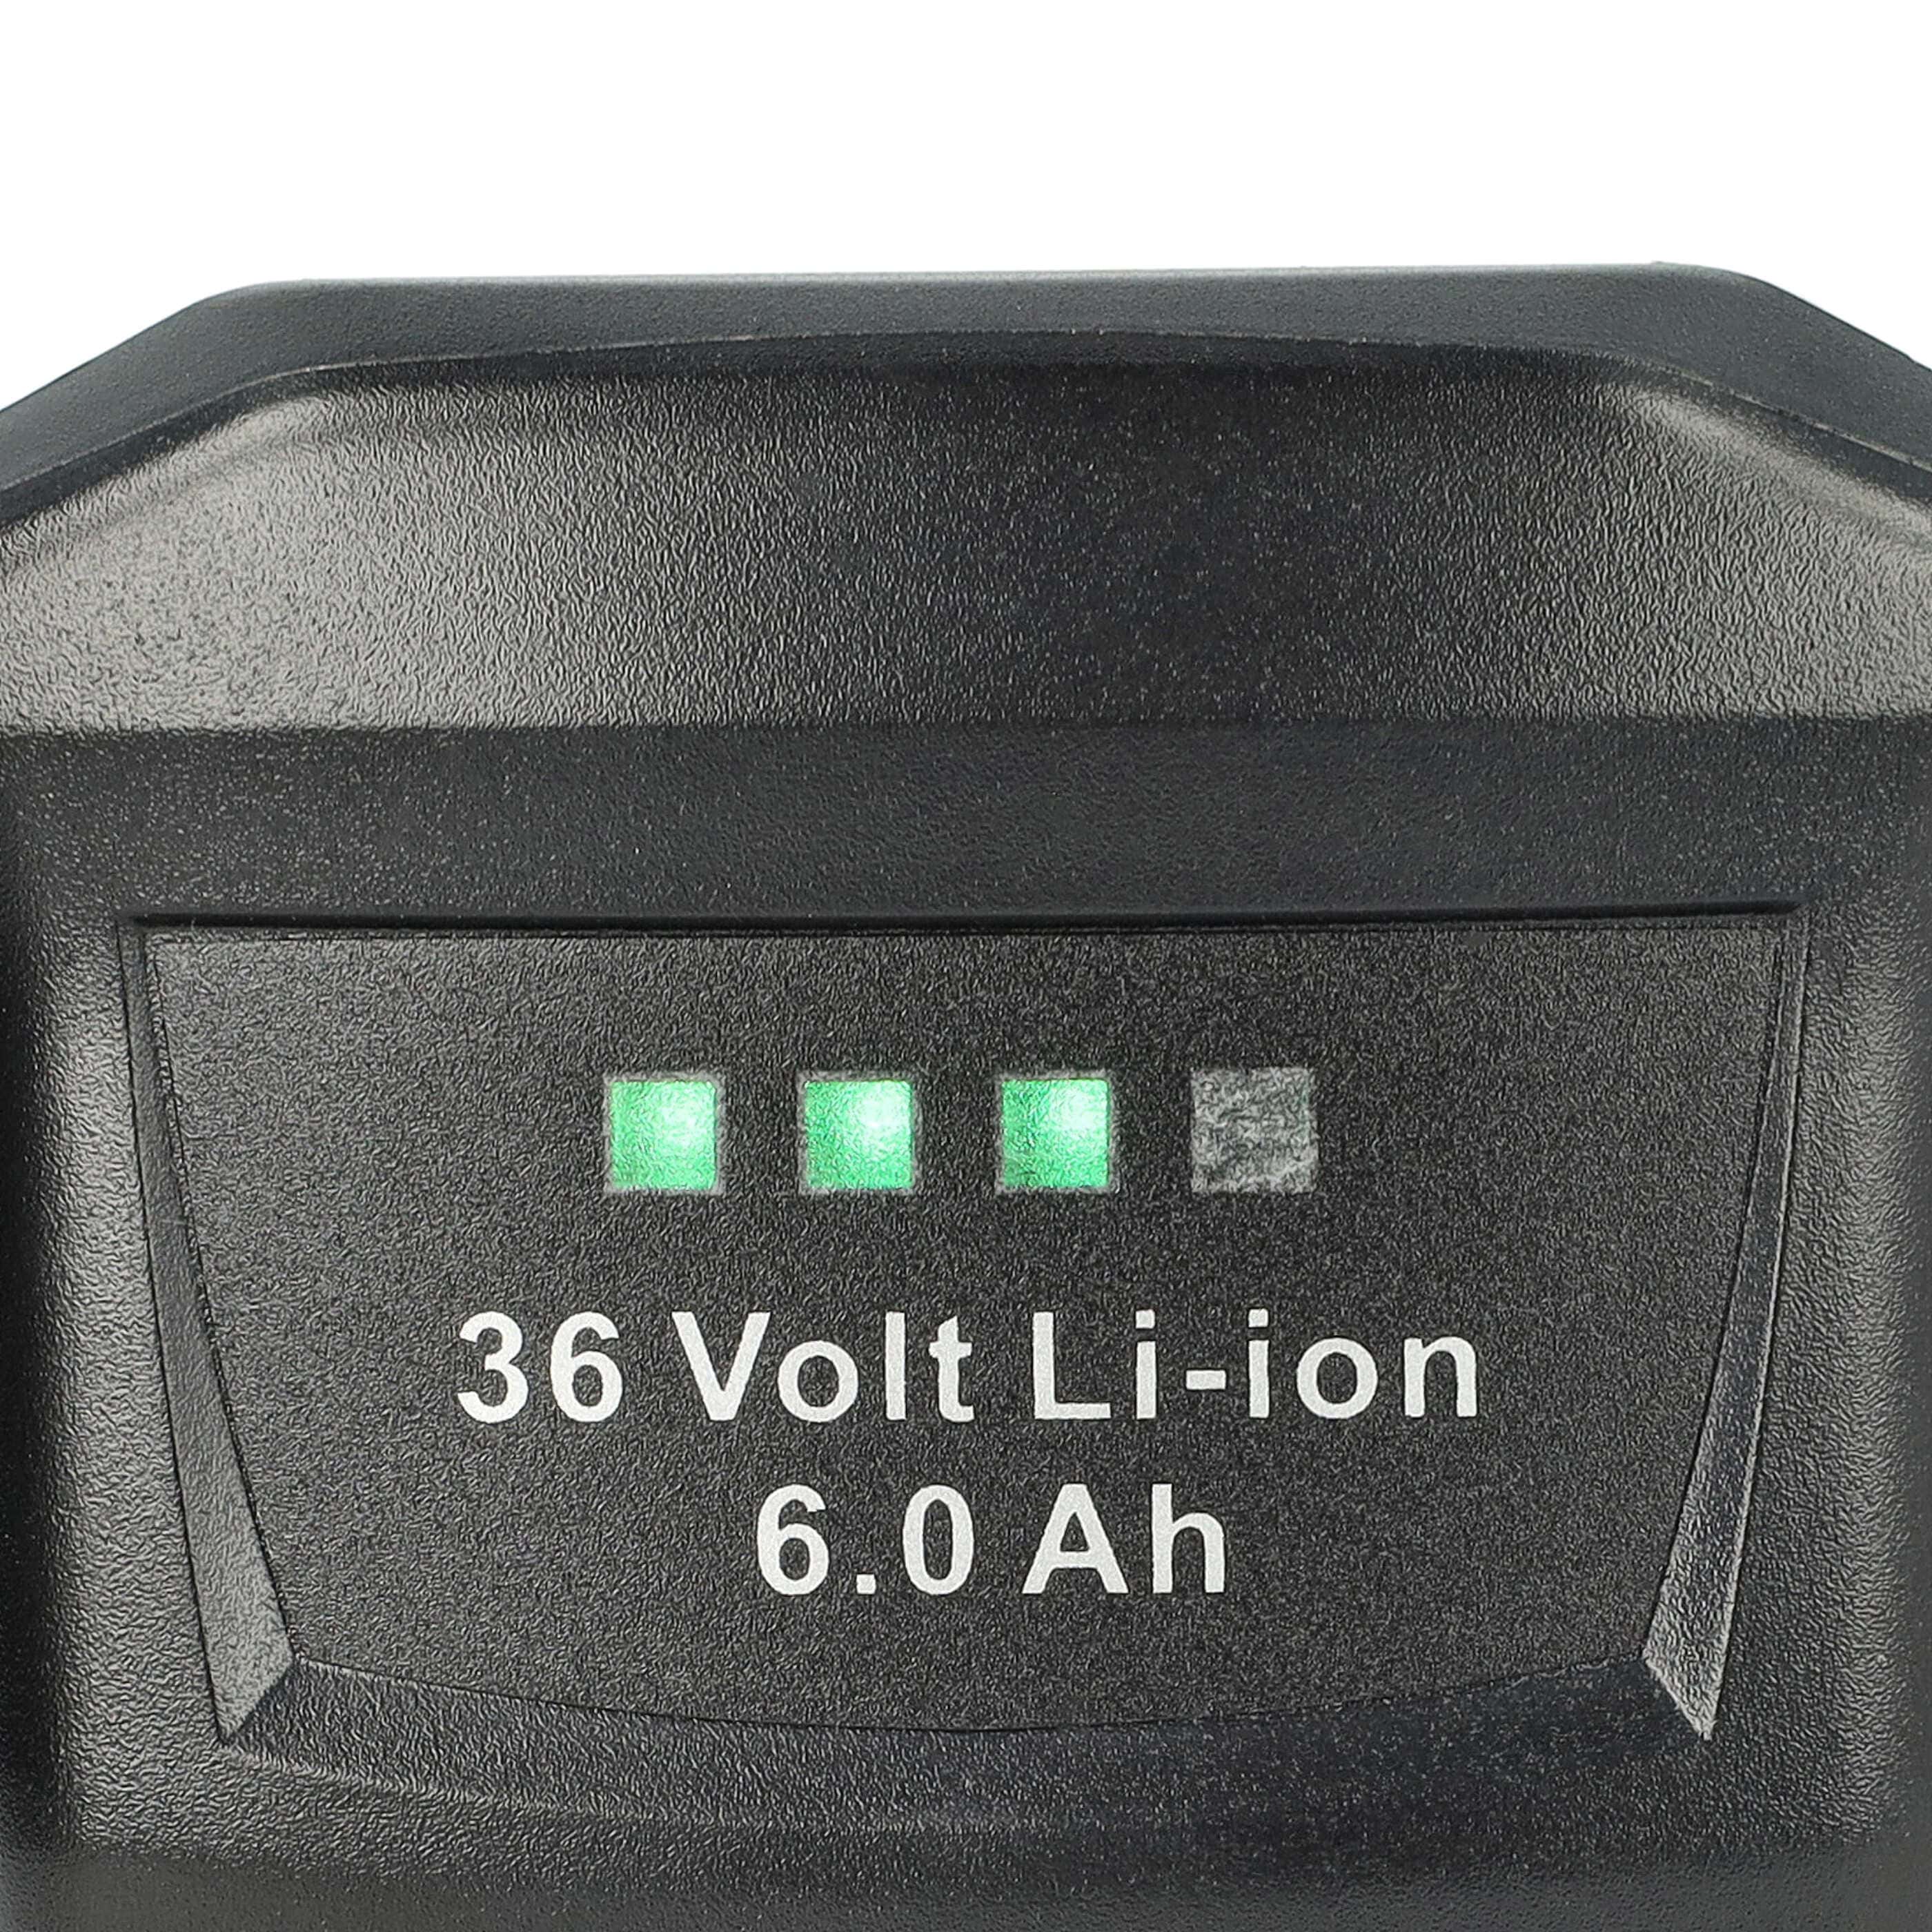 Batteria per attrezzo sostituisce Hilti B36, B36V, 2203932, 418009 - 6000 mAh, 36 V, Li-Ion